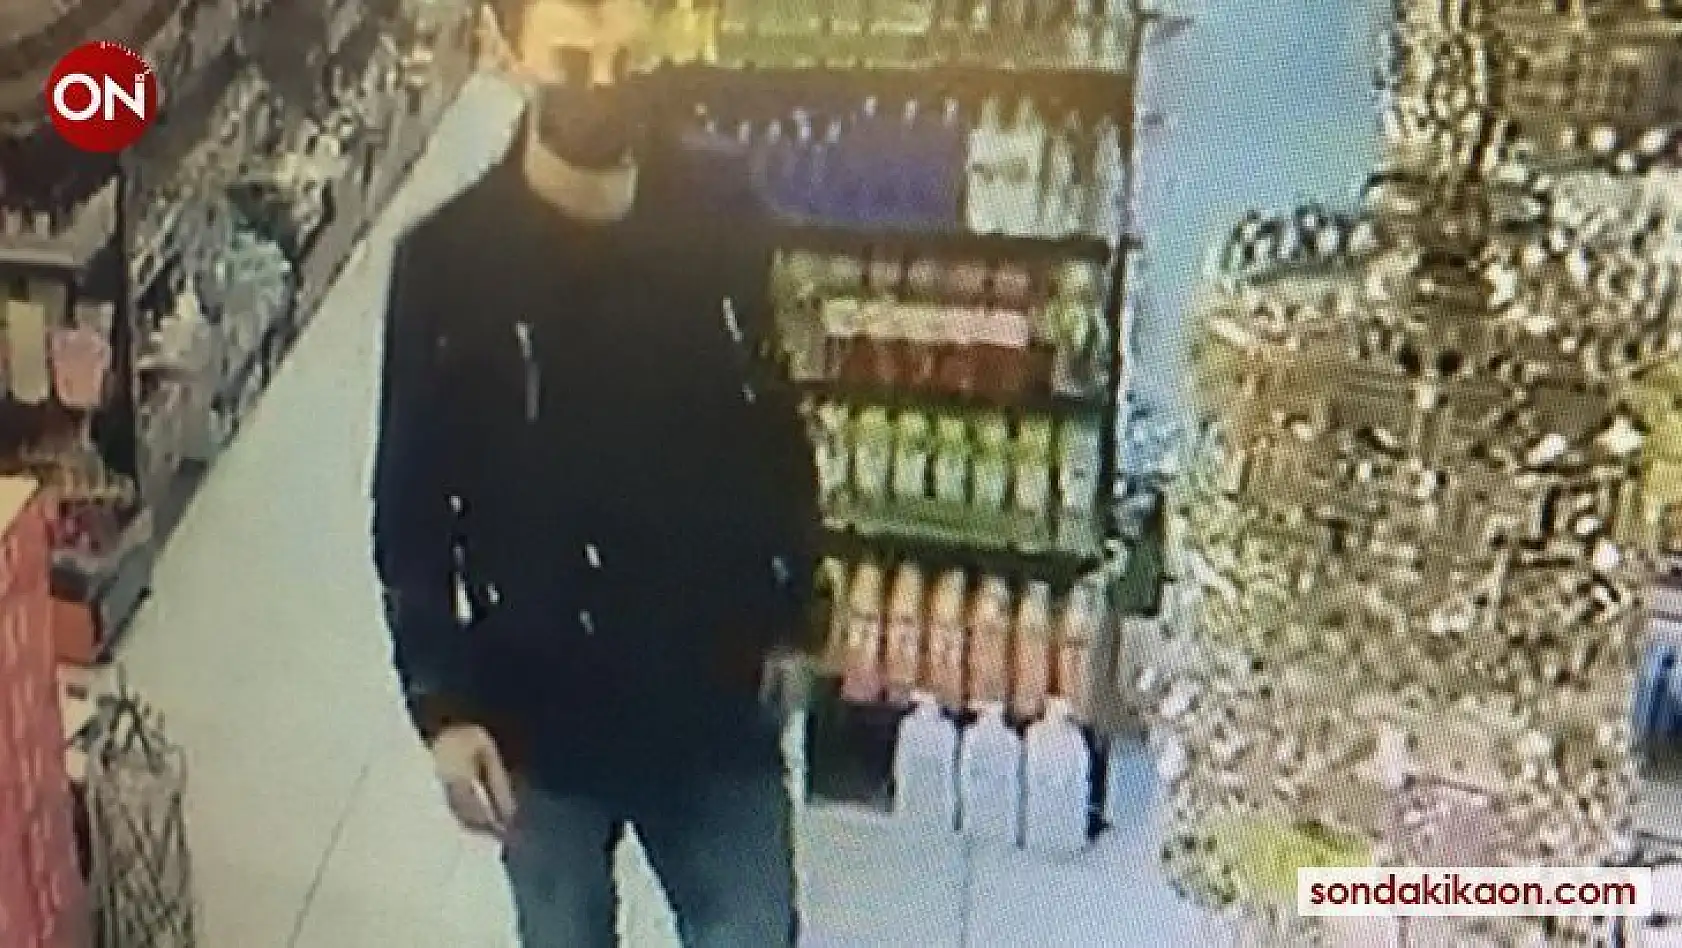 Marketten şampuan hırsızlığı kameraya yansıdı